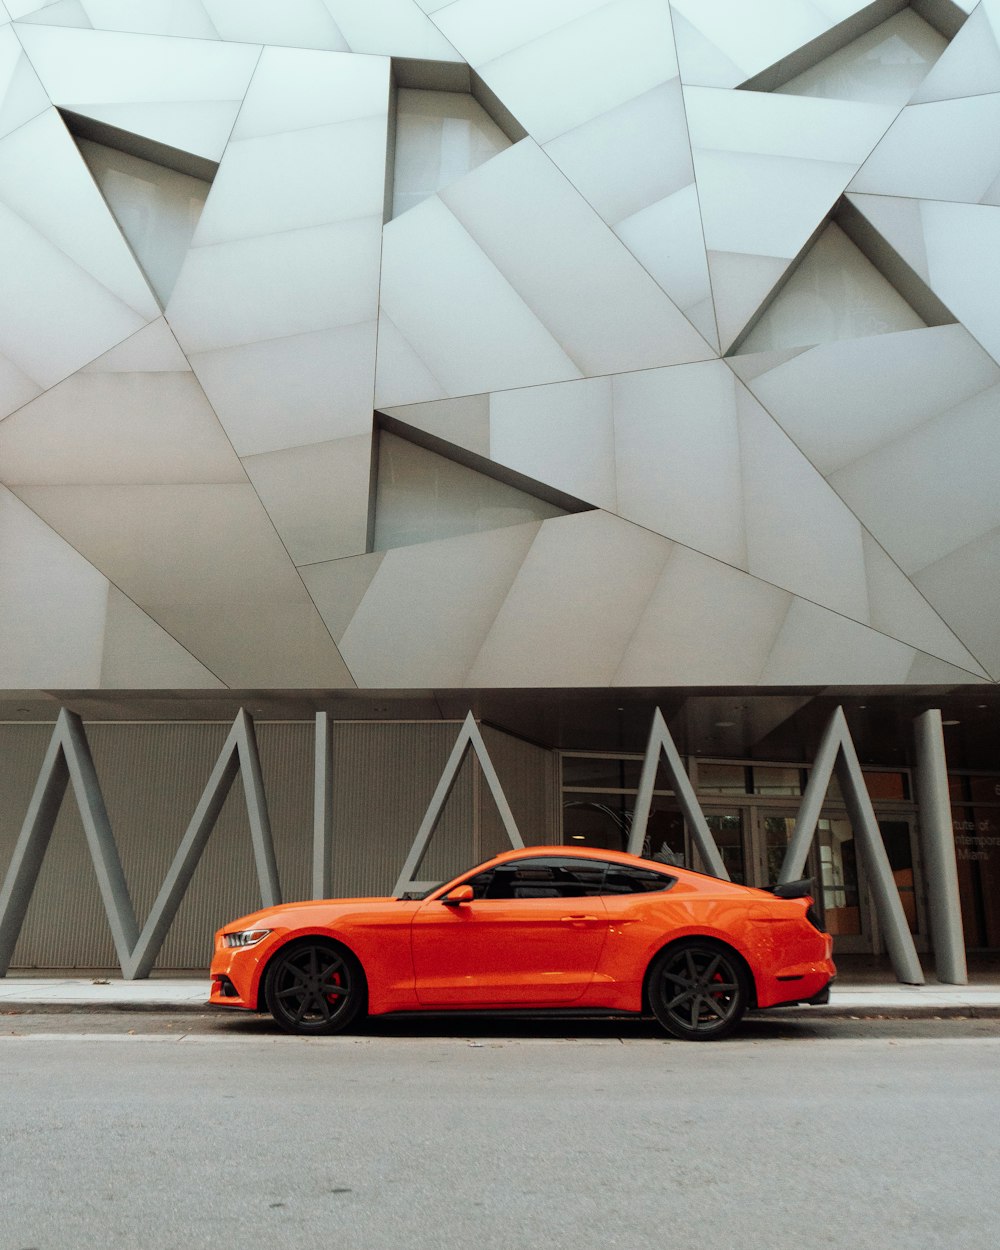 orange coupe parked near gray concrete building